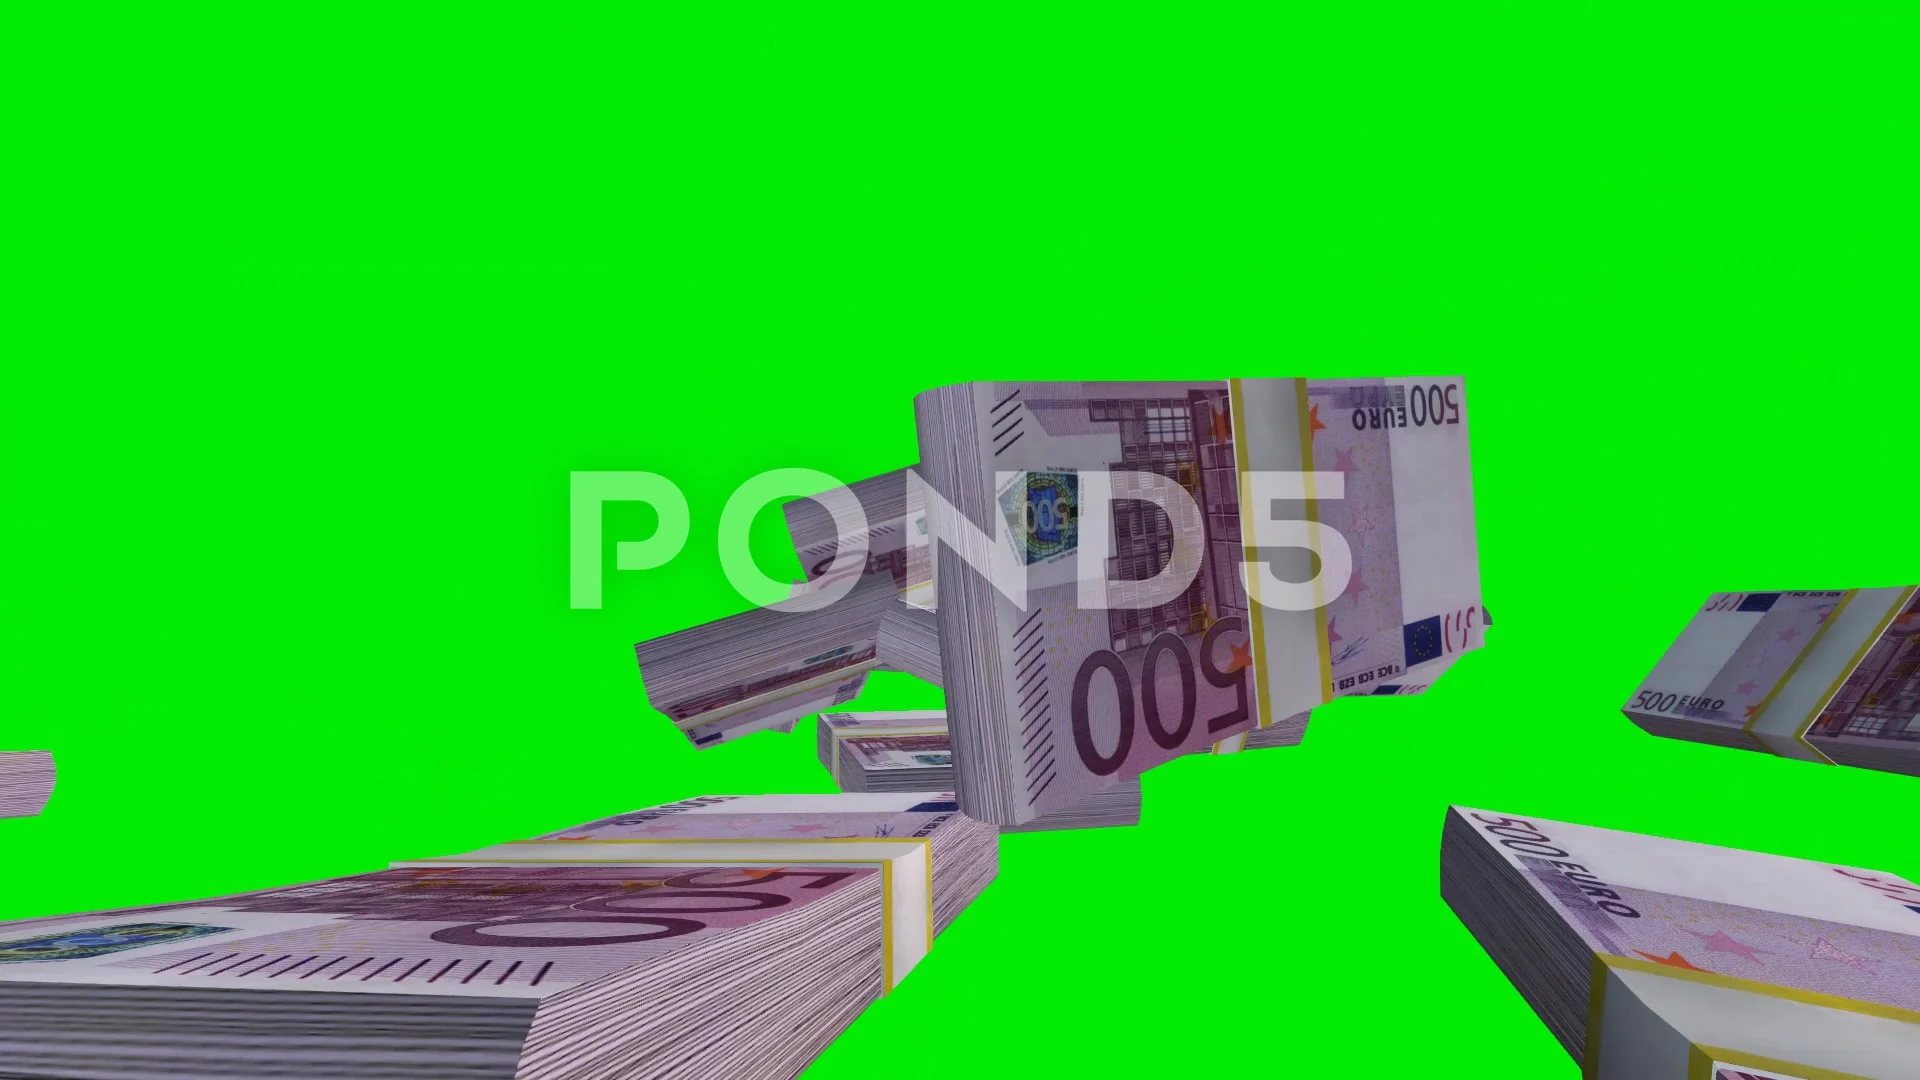 Euro rơi thỏm trên nền xanh Green Screen sẽ khiến bạn cảm thấy hào hứng với sự giàu có. Hãy tưởng tượng bản thân đang chìm đắm trong một biển tiền của châu Âu đầy may mắn và thú vị.